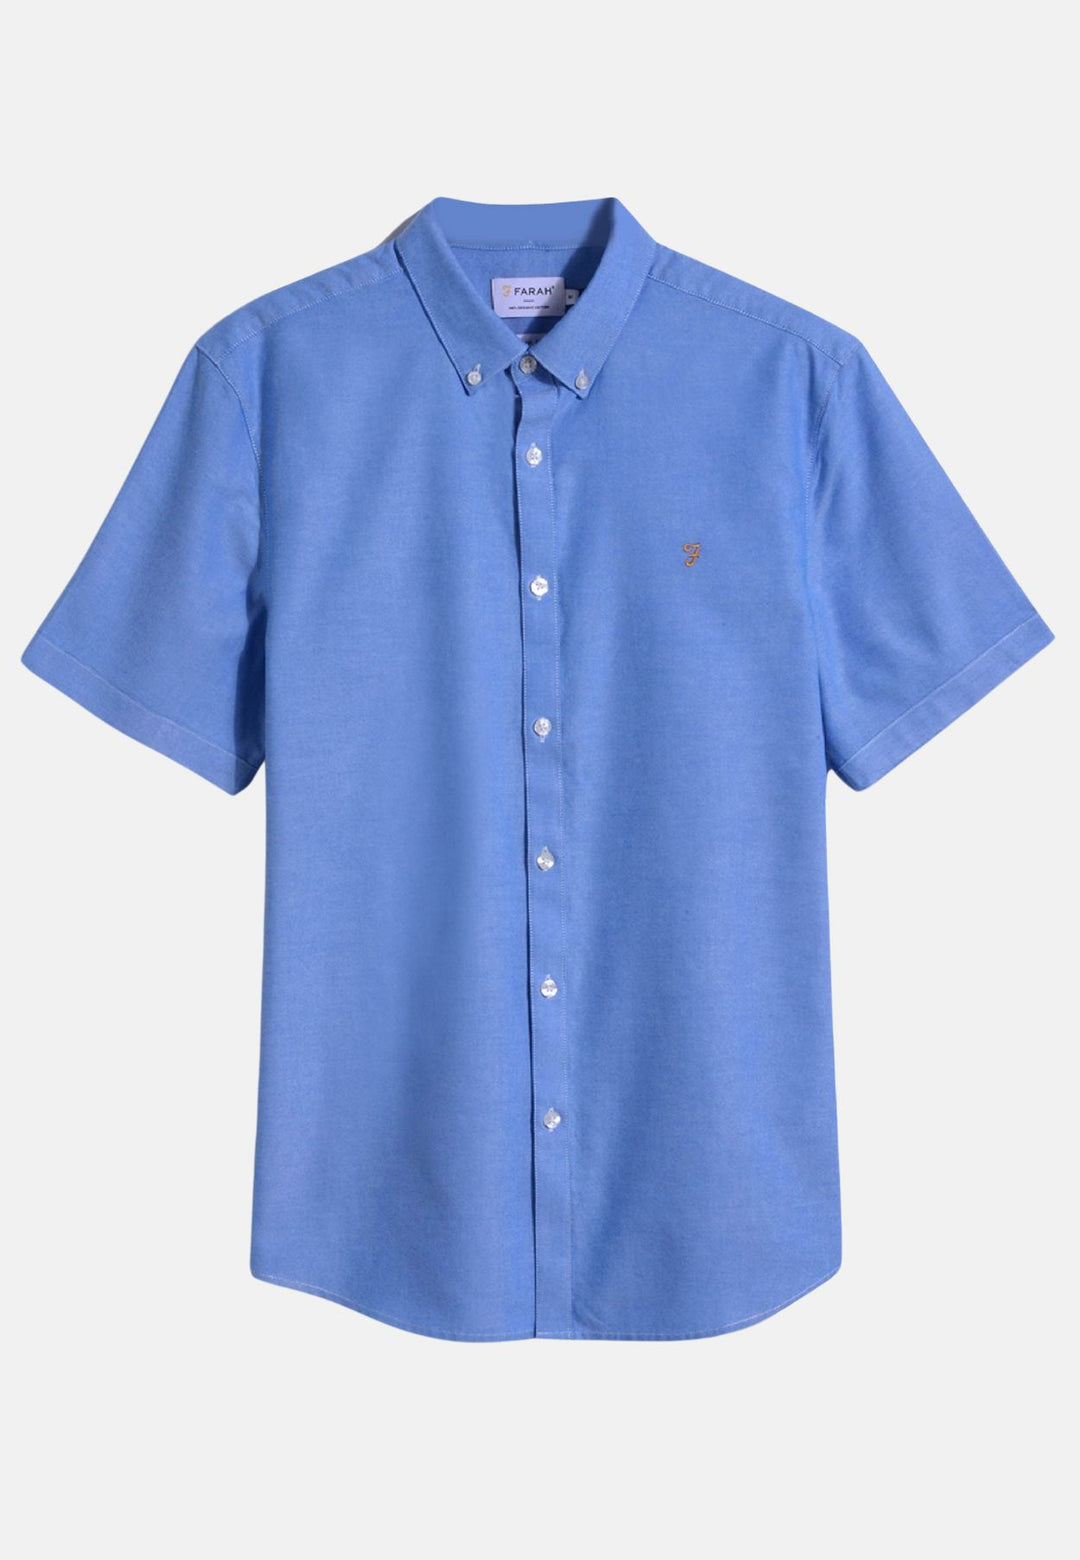 Men's Farah Short Sleeve Brewer Shirt in Blue